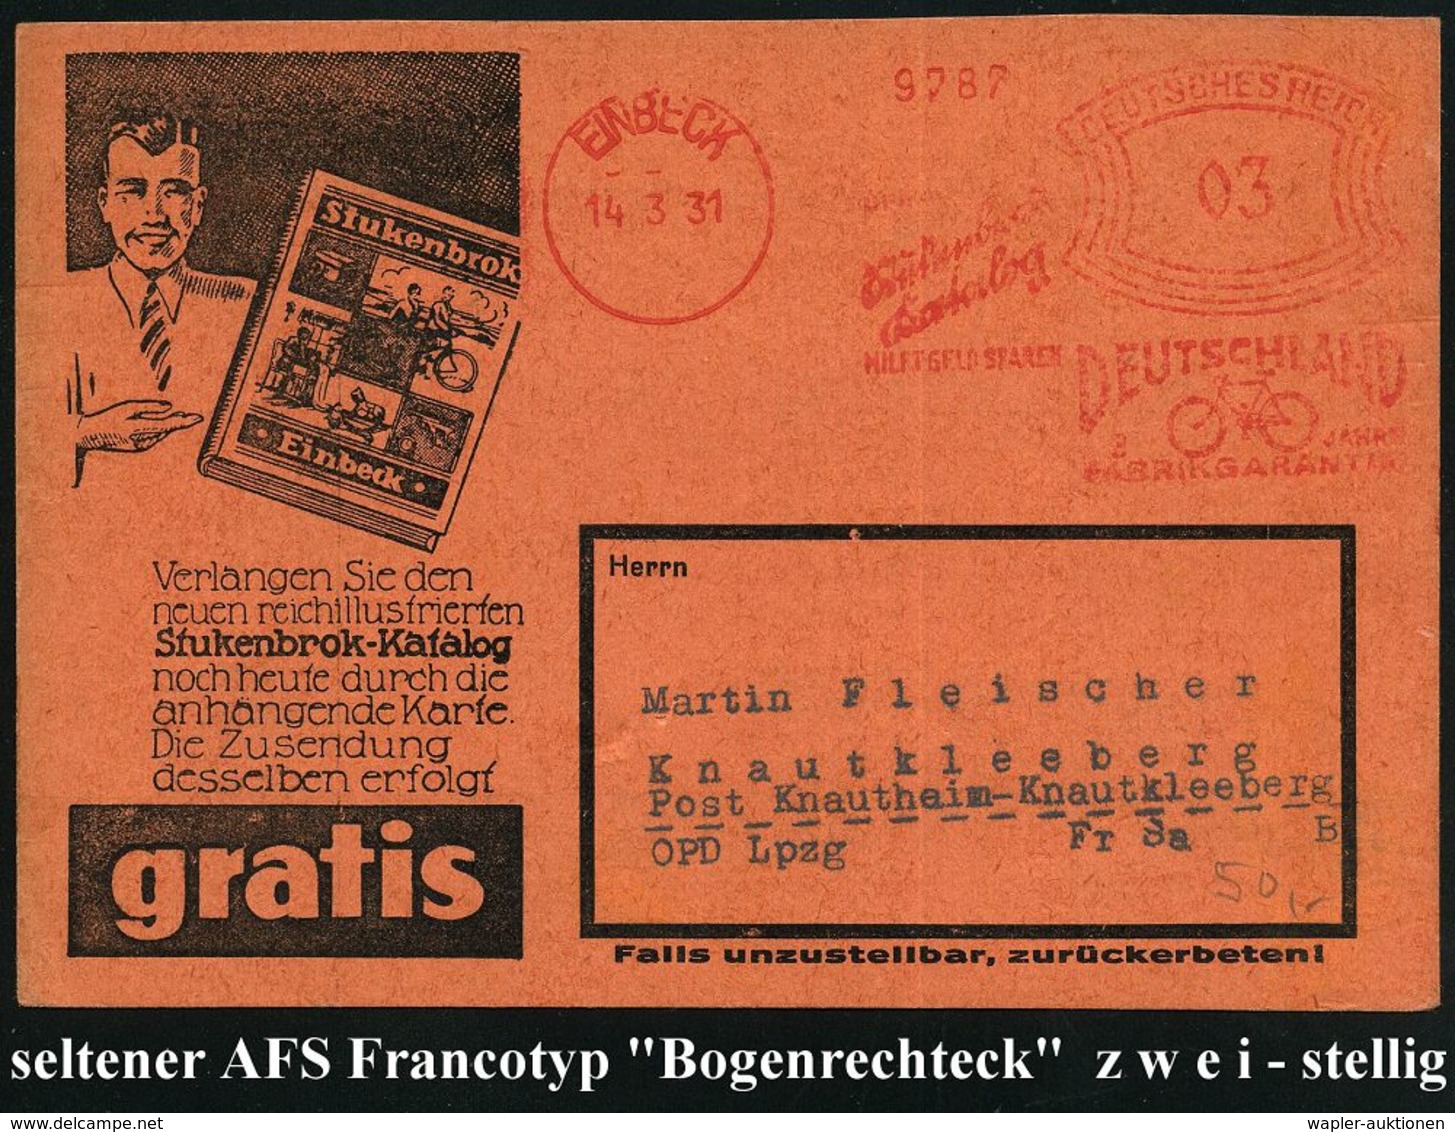 F A H R R A D  / INDUSTRIE & ZUBEHÖR : EINBECK/ ..Stukenbrok/ Katalog/ ..DEUTSCHLAND/ 3 JAHRE/ FABRIKGARANTIE 1931 (14.3 - Autres (Terre)